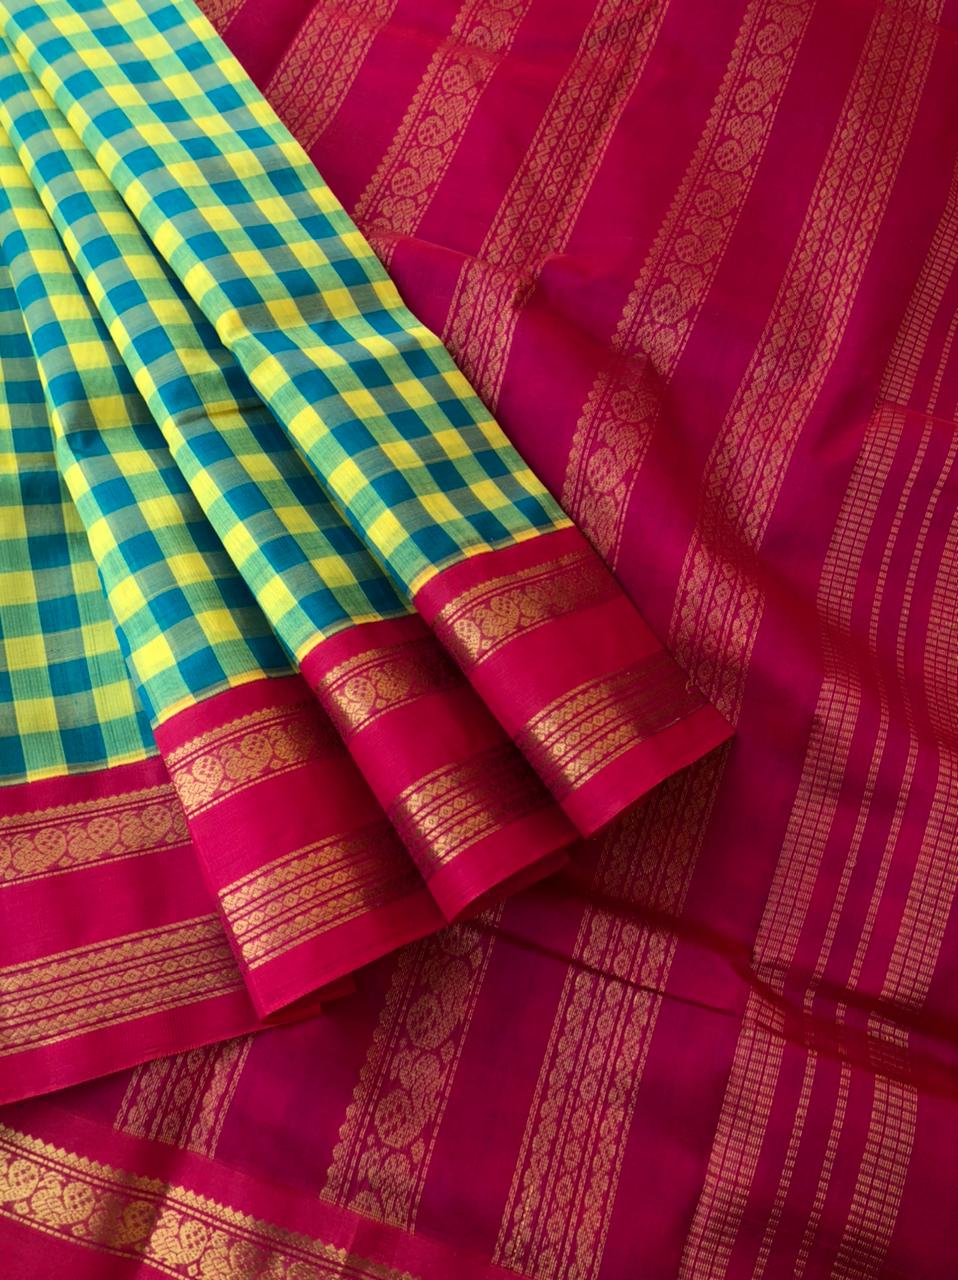 Korvai Silk Cottons - yellow and teal paalum Palamum Kattam